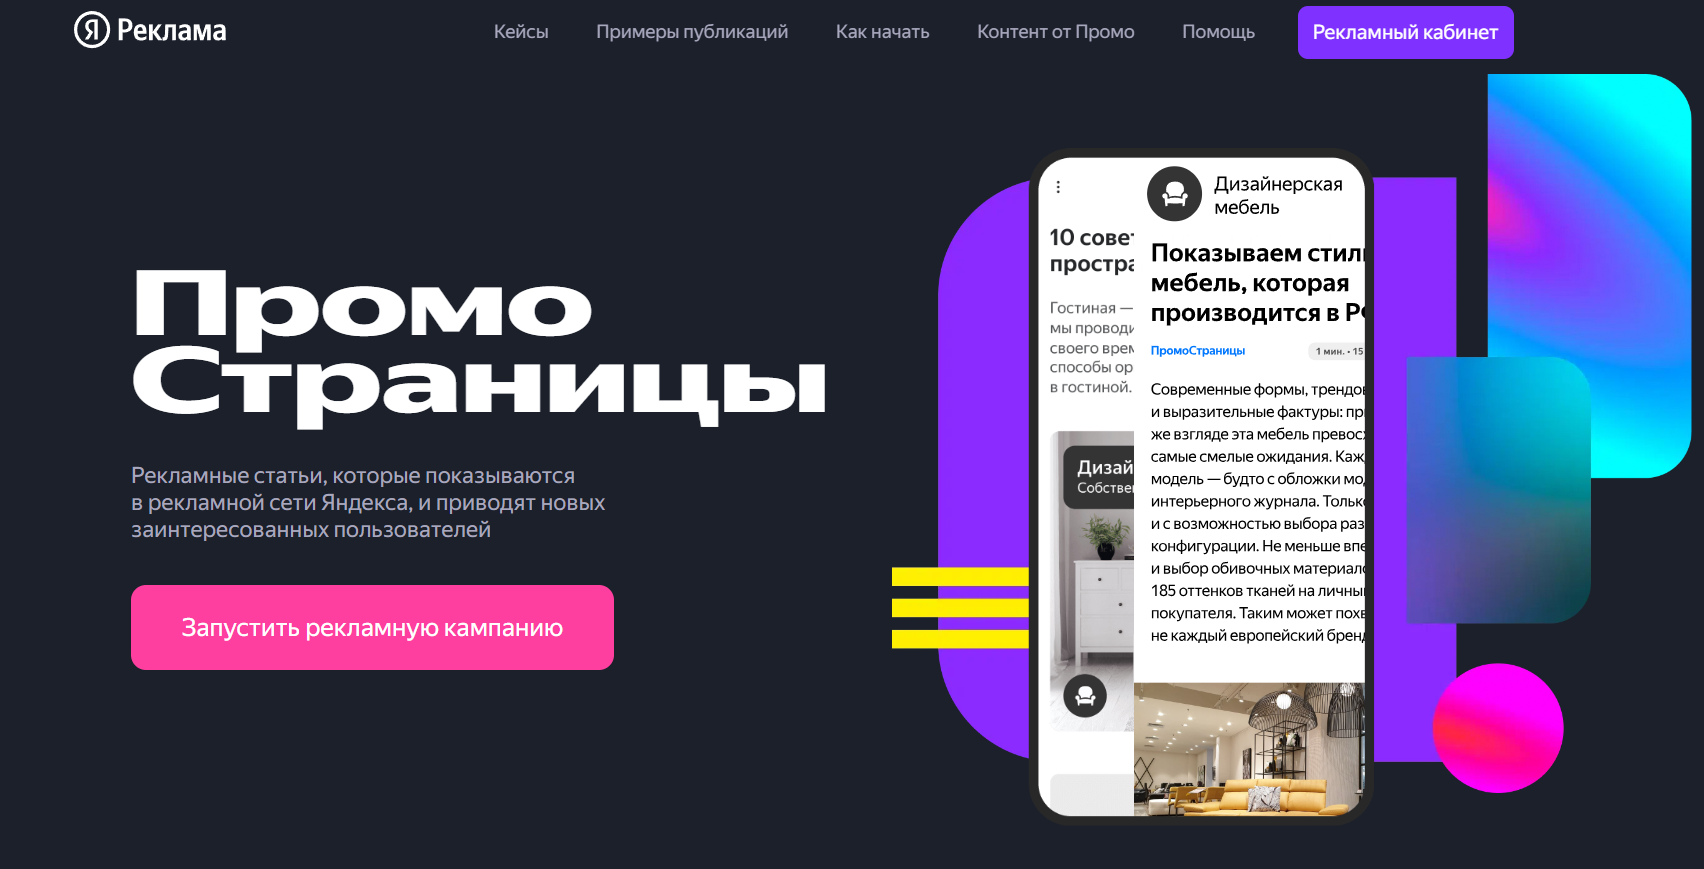 Что такое ПромоСтраницы от Яндекса и как работает этот рекламный формат